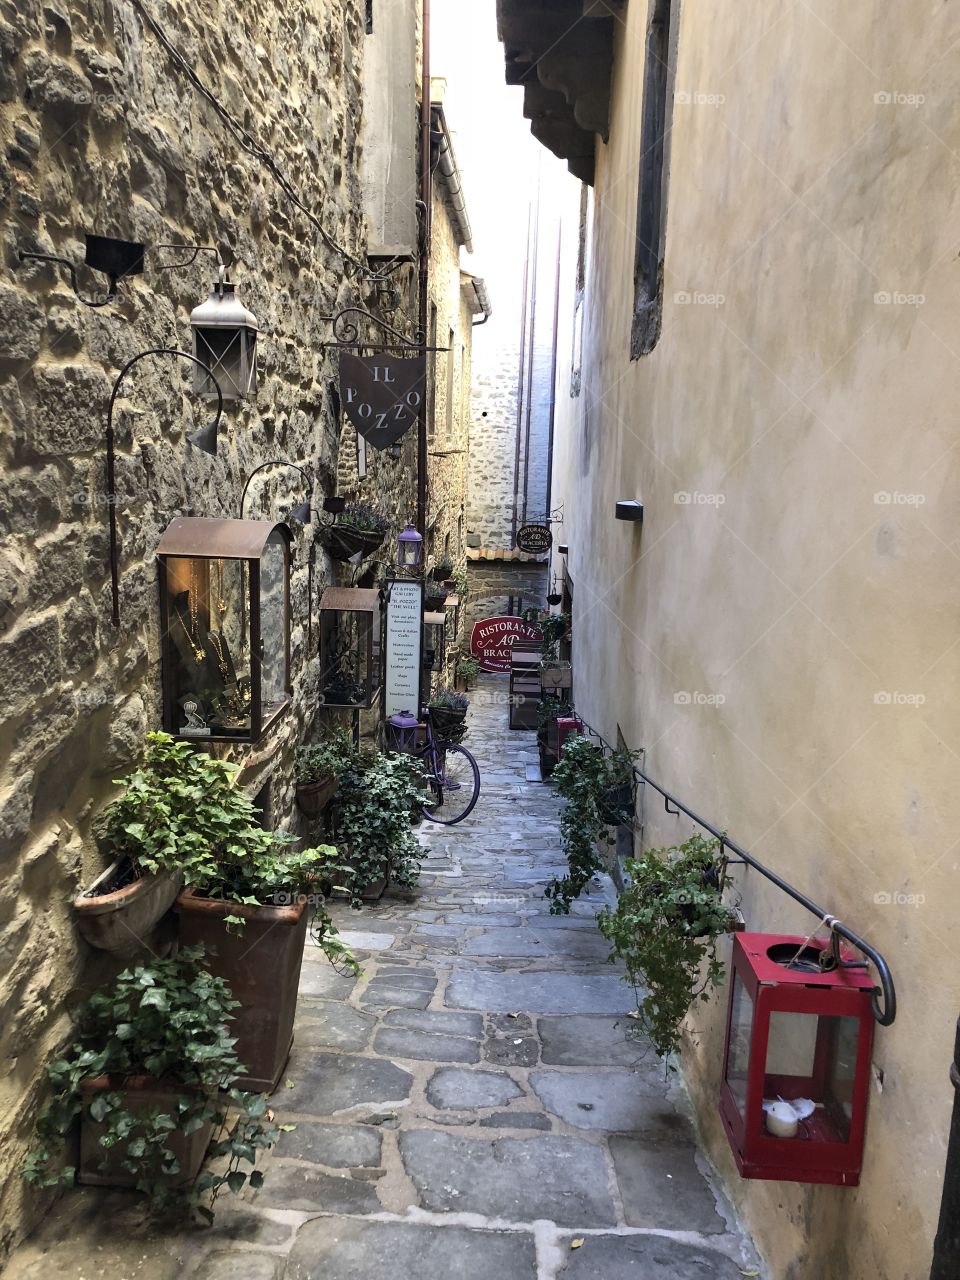 Alleyway full of greenery - Cortona, Italy